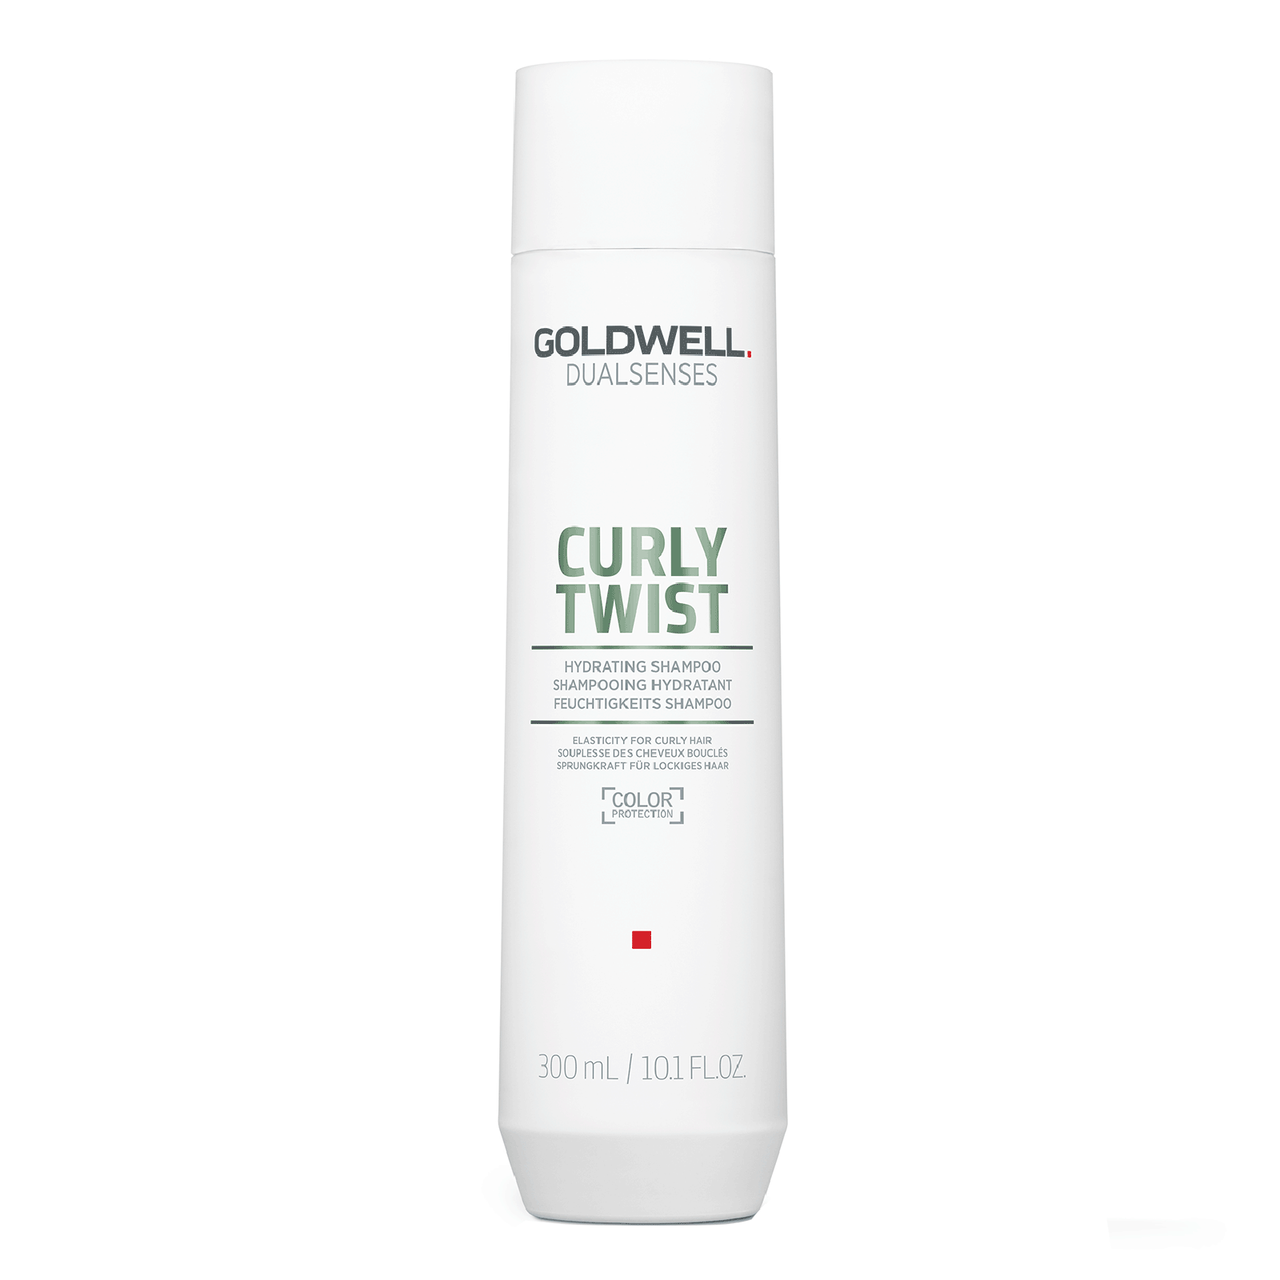 Goldwell Dualsenses Curly Twist Hydrating Shampoo 10.1oz/ 300ml - $27.50